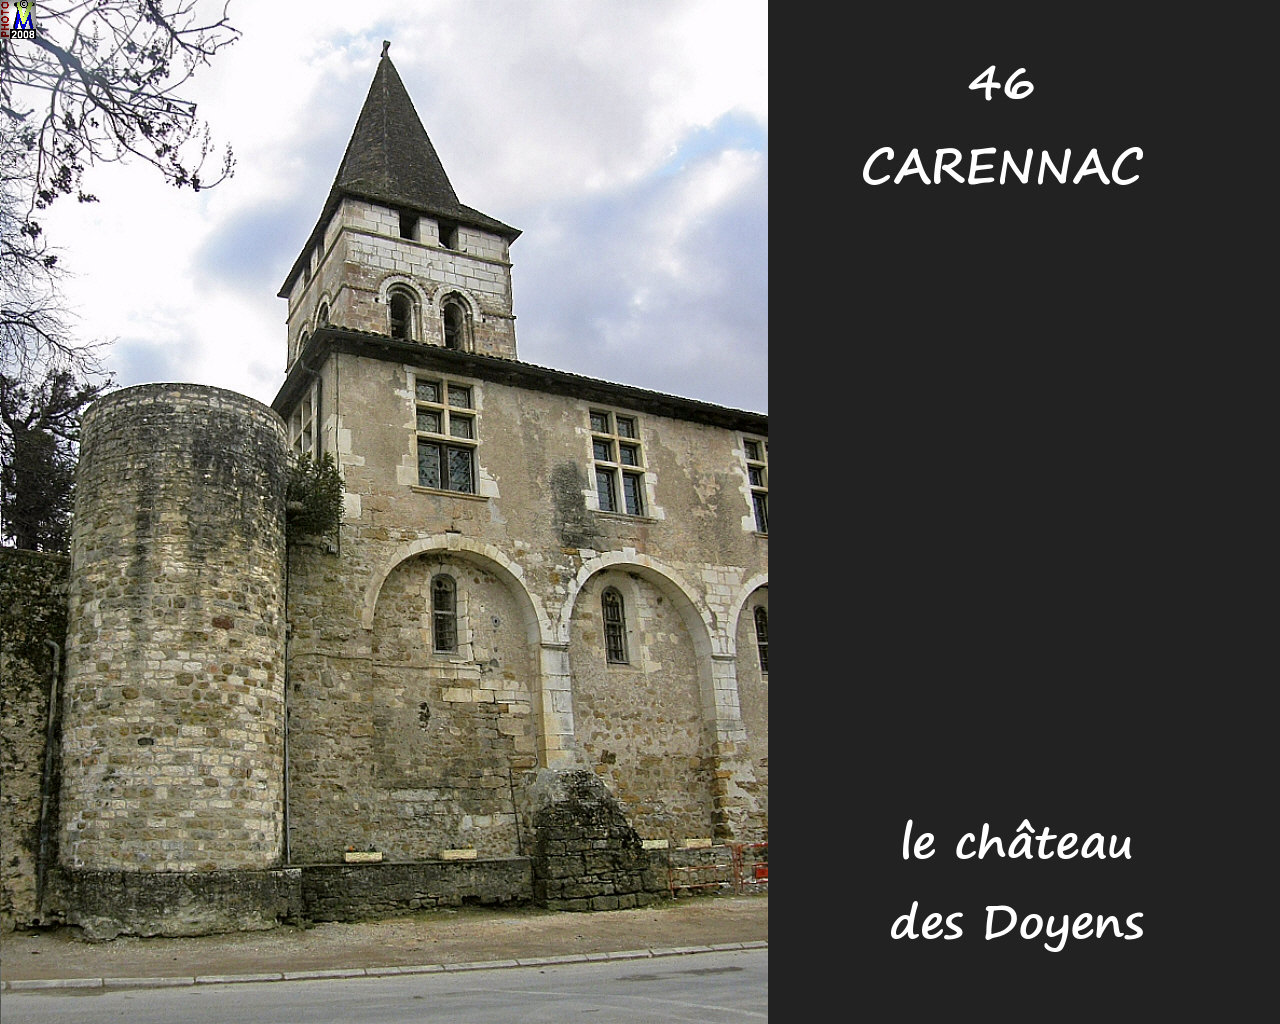 46CARENNAC_chateau_104.jpg